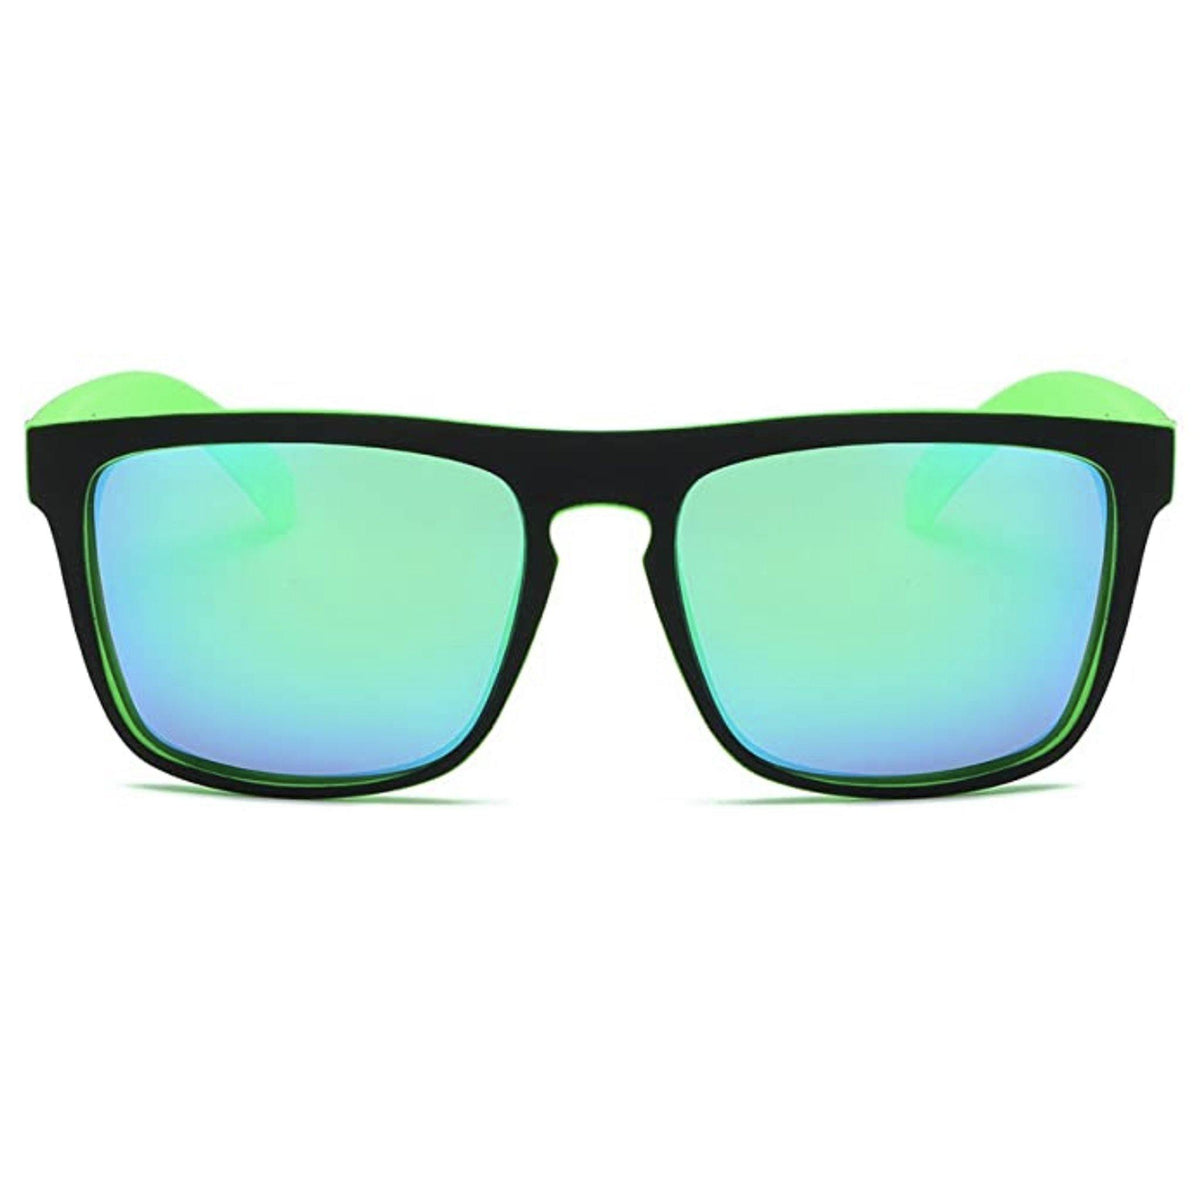 Dubery d731 polarized glasses anti-uv men– Dubery Optics Sunglasses